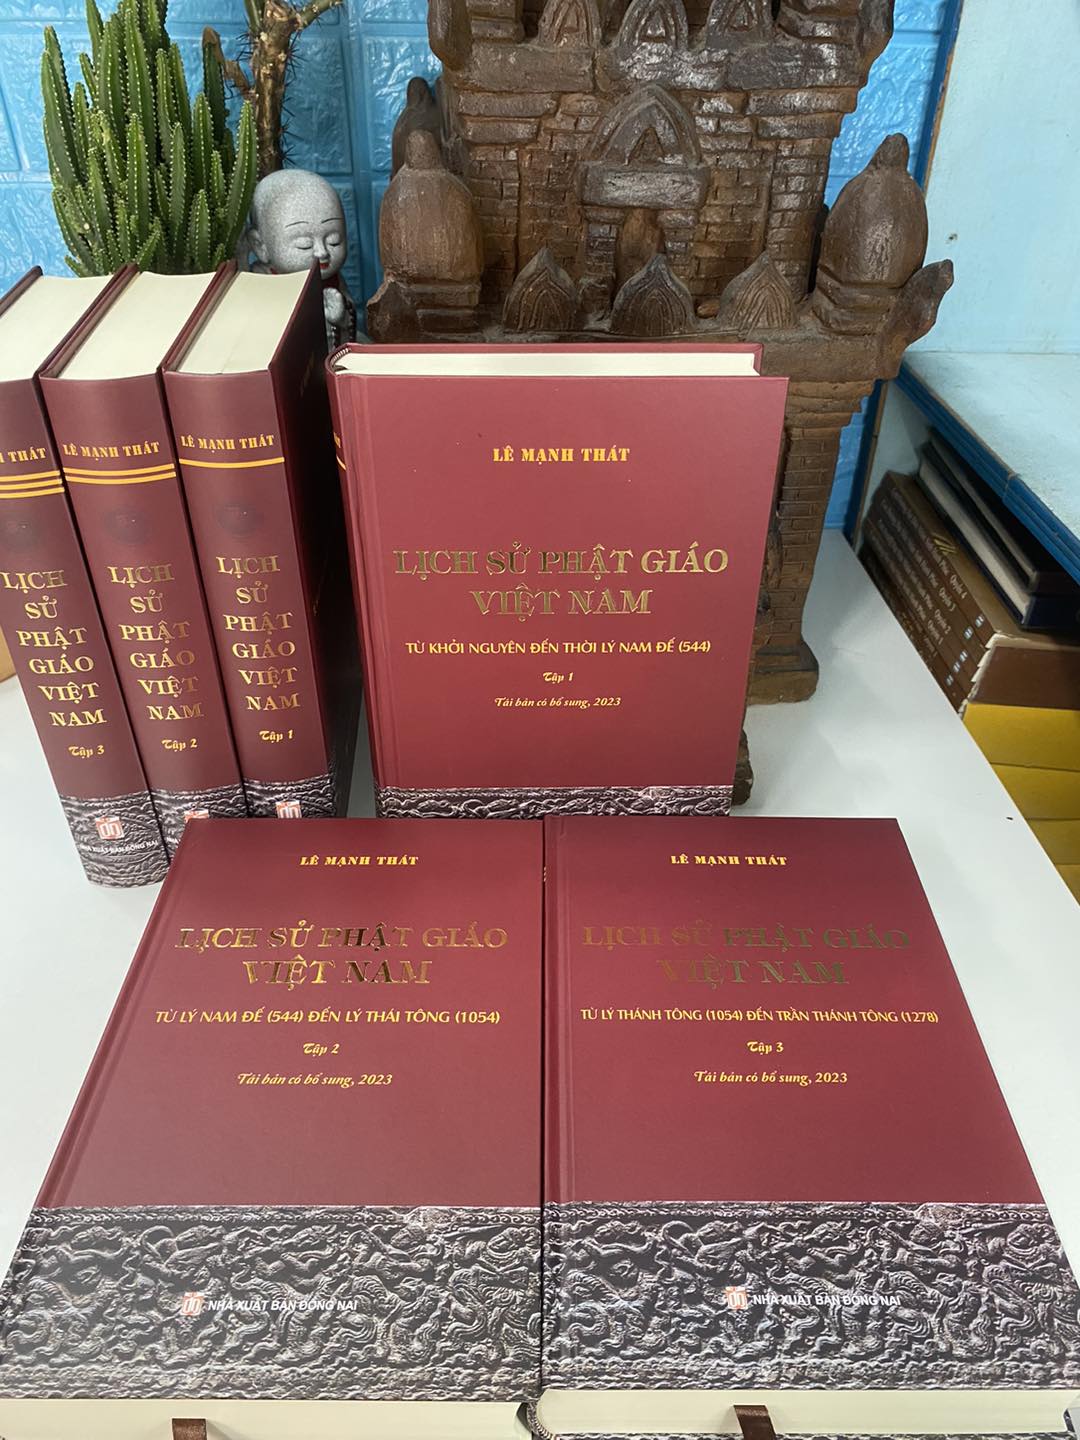  Lịch sử Phật giáo Việt Nam (trọn bộ 3 tập) - GS. Lê Mạnh Thát - Tái bản có bổ sung 2023